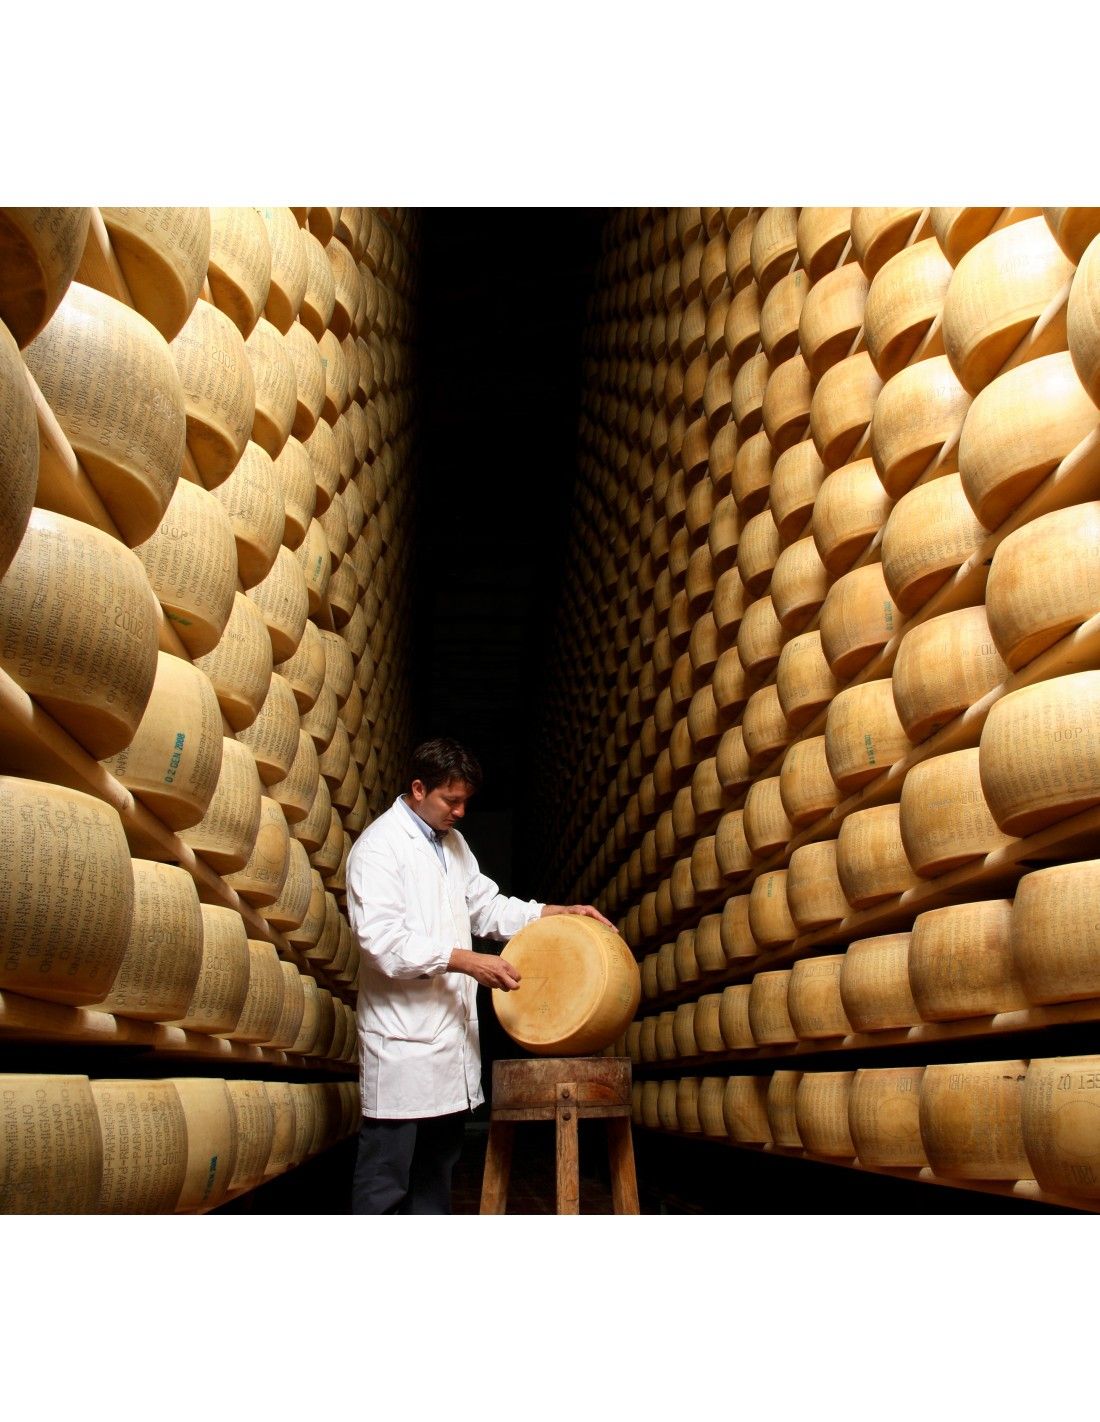 Parmigiano reggiano DOP râpé, qualité de montagne, affinage 48 mois